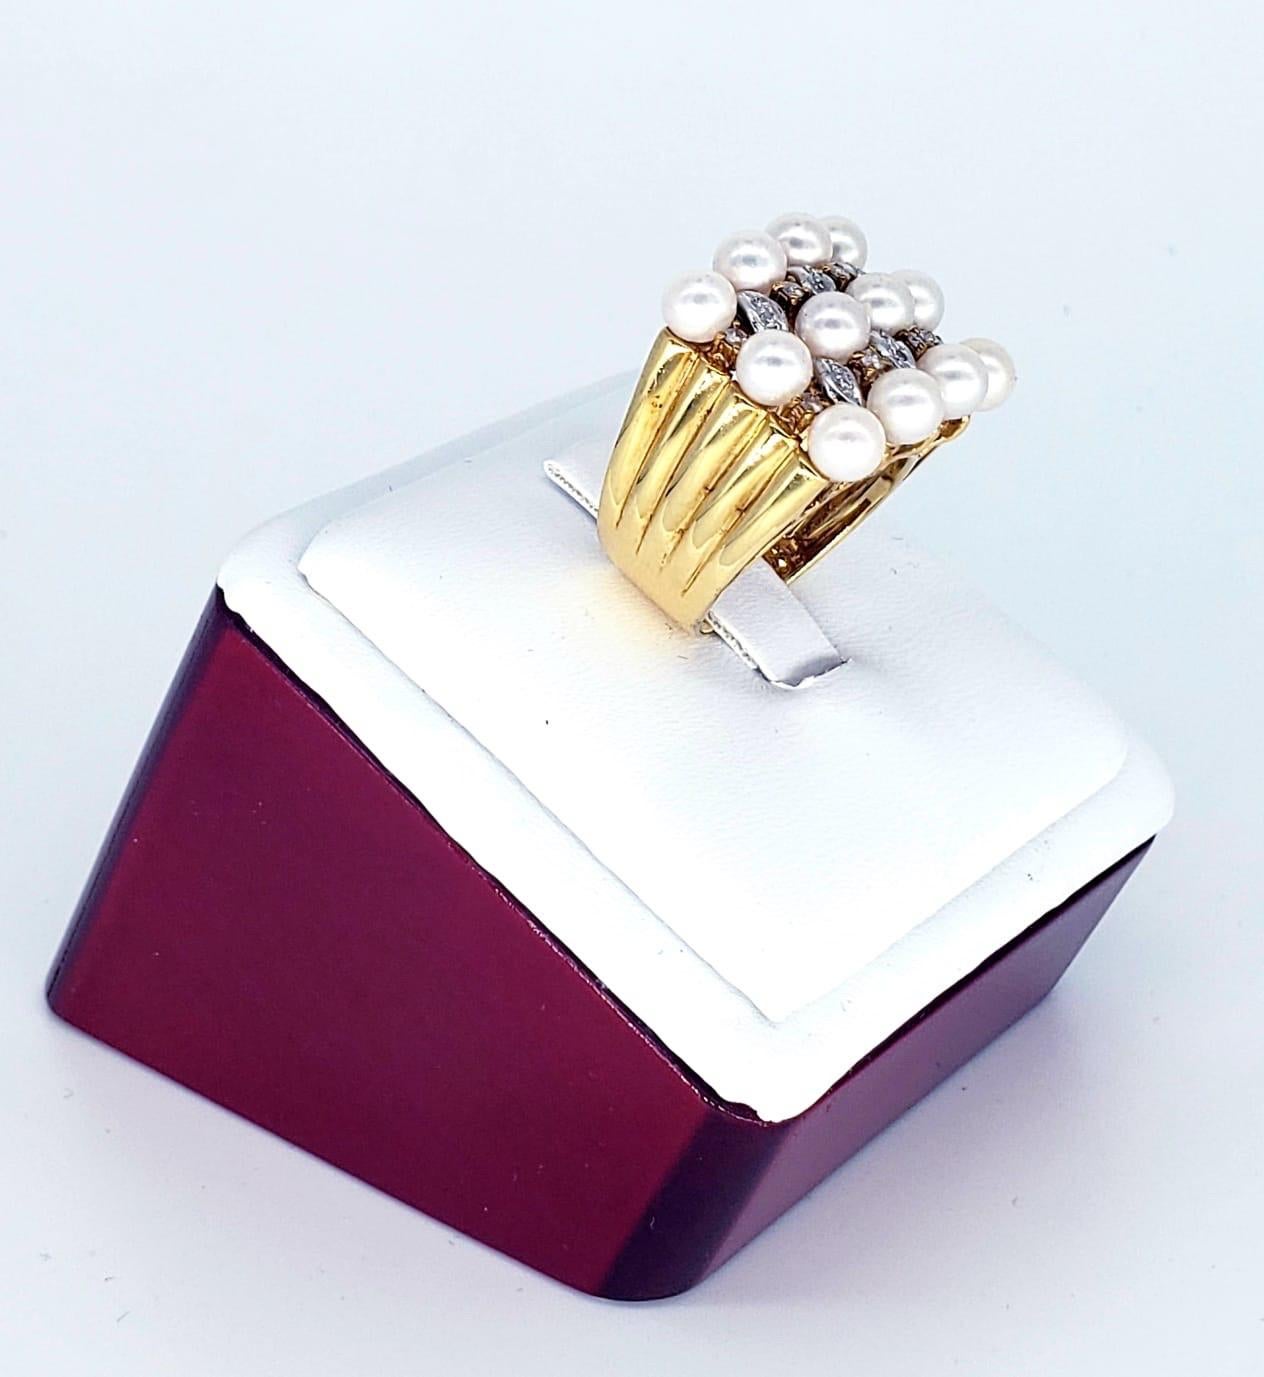 Vintage 18k Diamanten & Perlen Bridal Ring. Der Ring enthält 12 Perlen mit einer Größe von je 4,8 mm. Die Diamanten haben ein Gesamtgewicht von ca. 0,40 Karat. Der Ring wiegt 14 Gramm. Luxuriöser und modischer Statement-Brautring, handgefertigt in